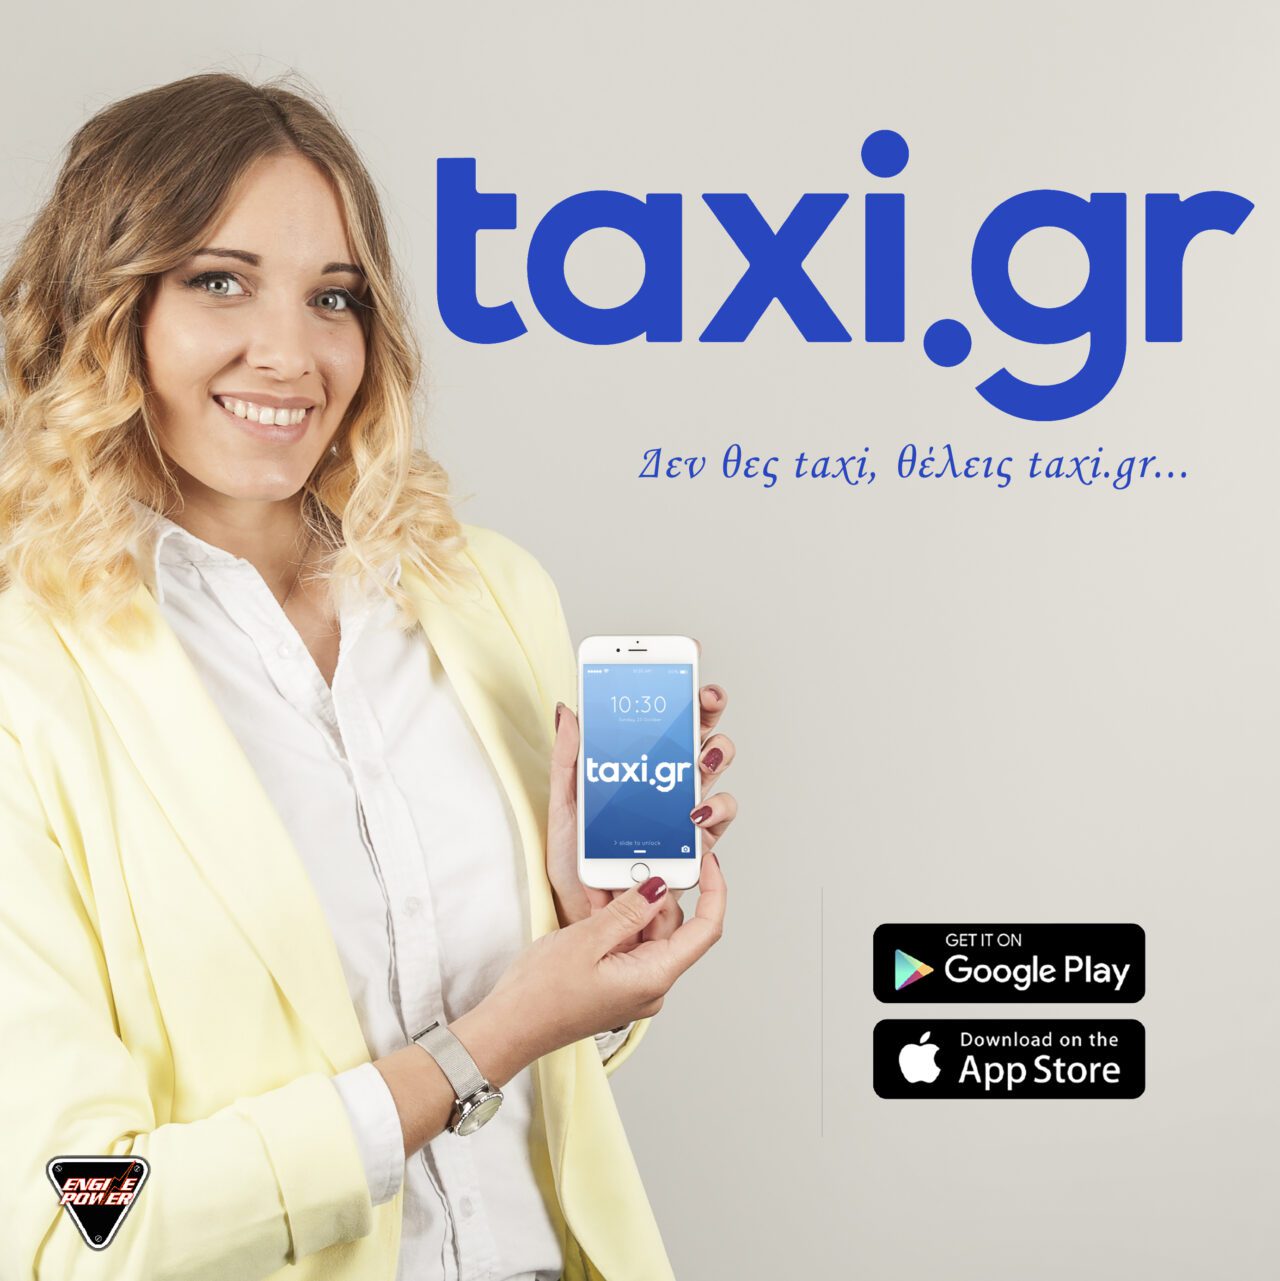 taxi-taxi.gr-van-limo-taxitzis-app-efarmogi-metakinisi-metafora-exipiretisi-transfer-vip-travel.